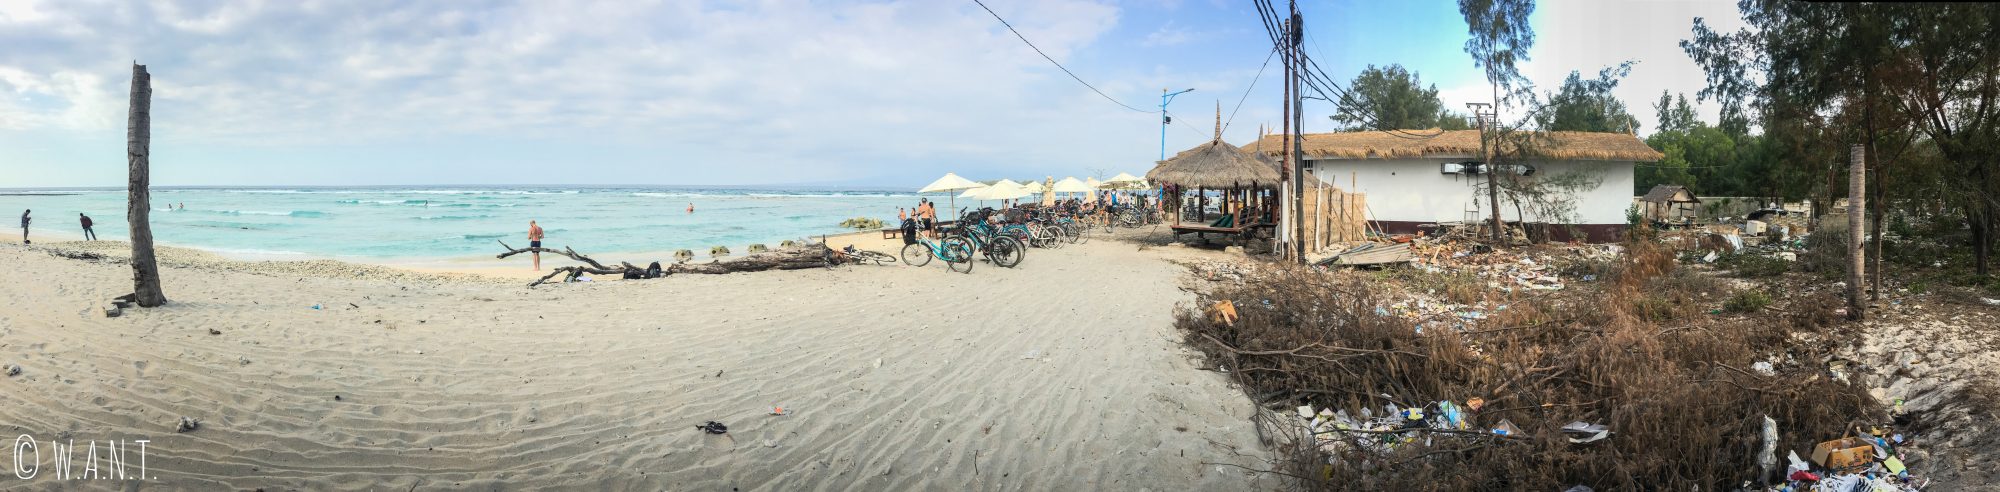 Panorama d'une plage de Gili Trawangan entourée de déchets